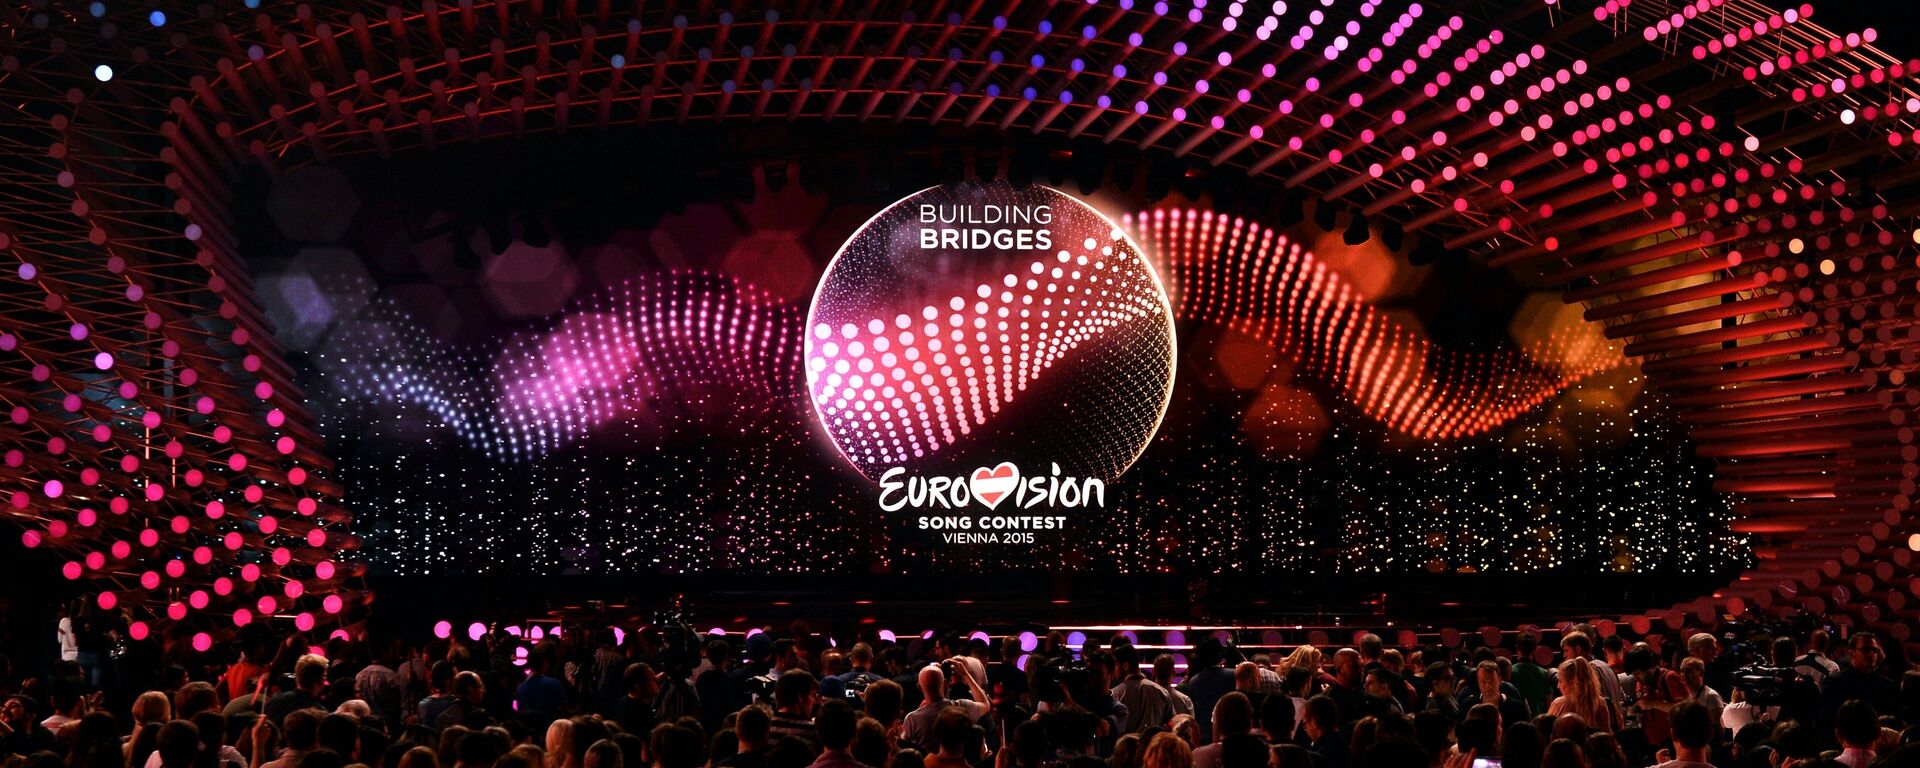 Репетиция первого полуфинала международного конкурса песни Евровидение 2015 в Вене - Sputnik Абхазия, 1920, 26.02.2022